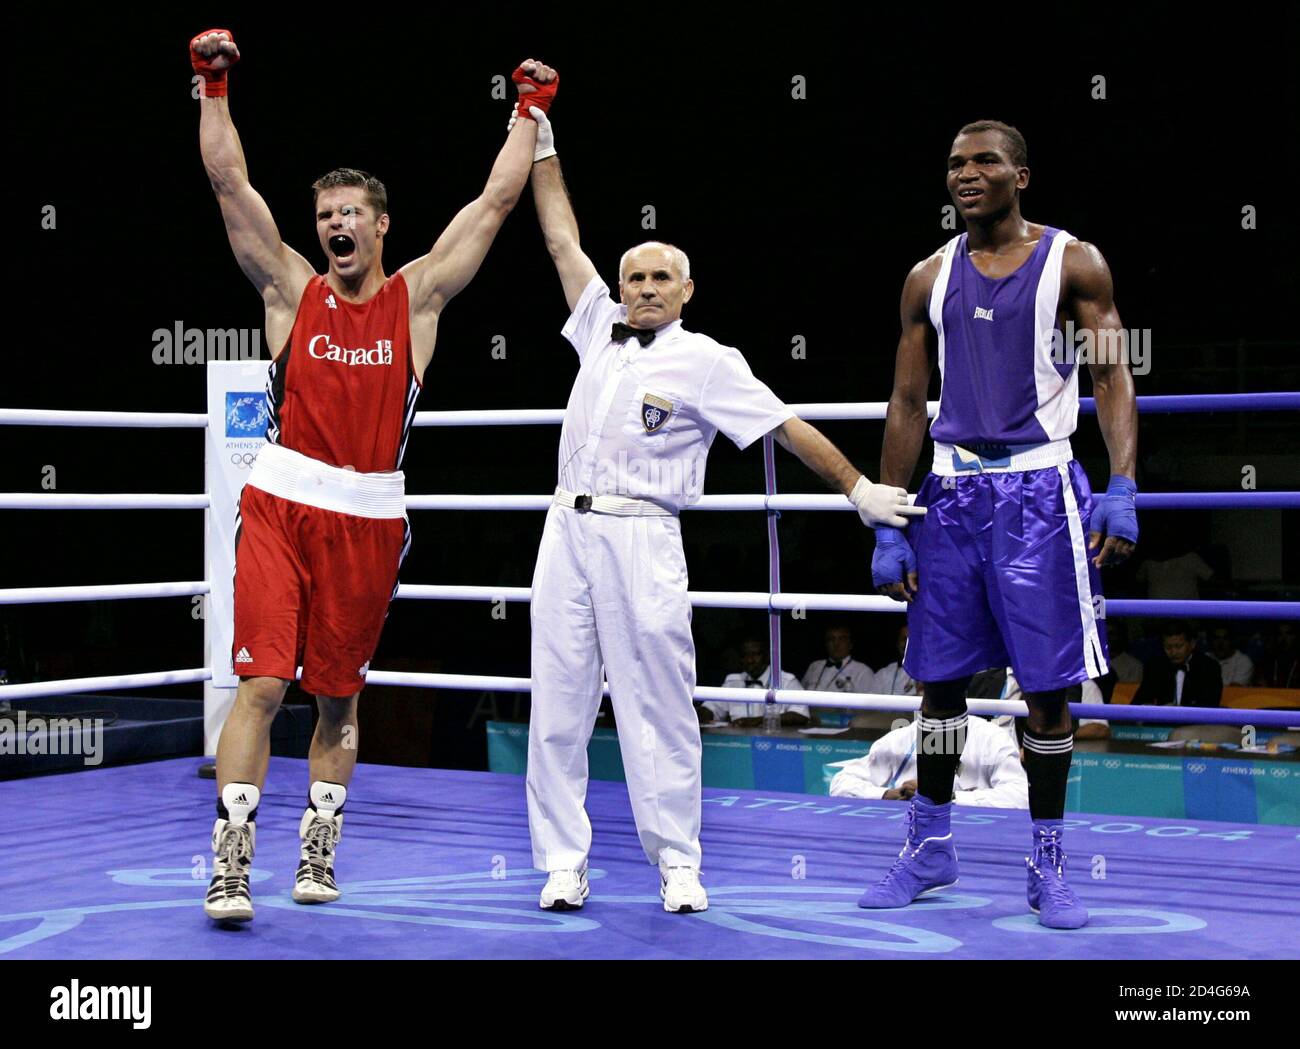 Trevor Stewardson (L) du Canada célèbre la victoire contre Flavio Furtado (R) du Cap-Vert, dans un poids léger (81 kg), lors de leur premier match de boxe aux Jeux olympiques d'été d'Athènes en 2004, le 14 août 2004. Banque D'Images